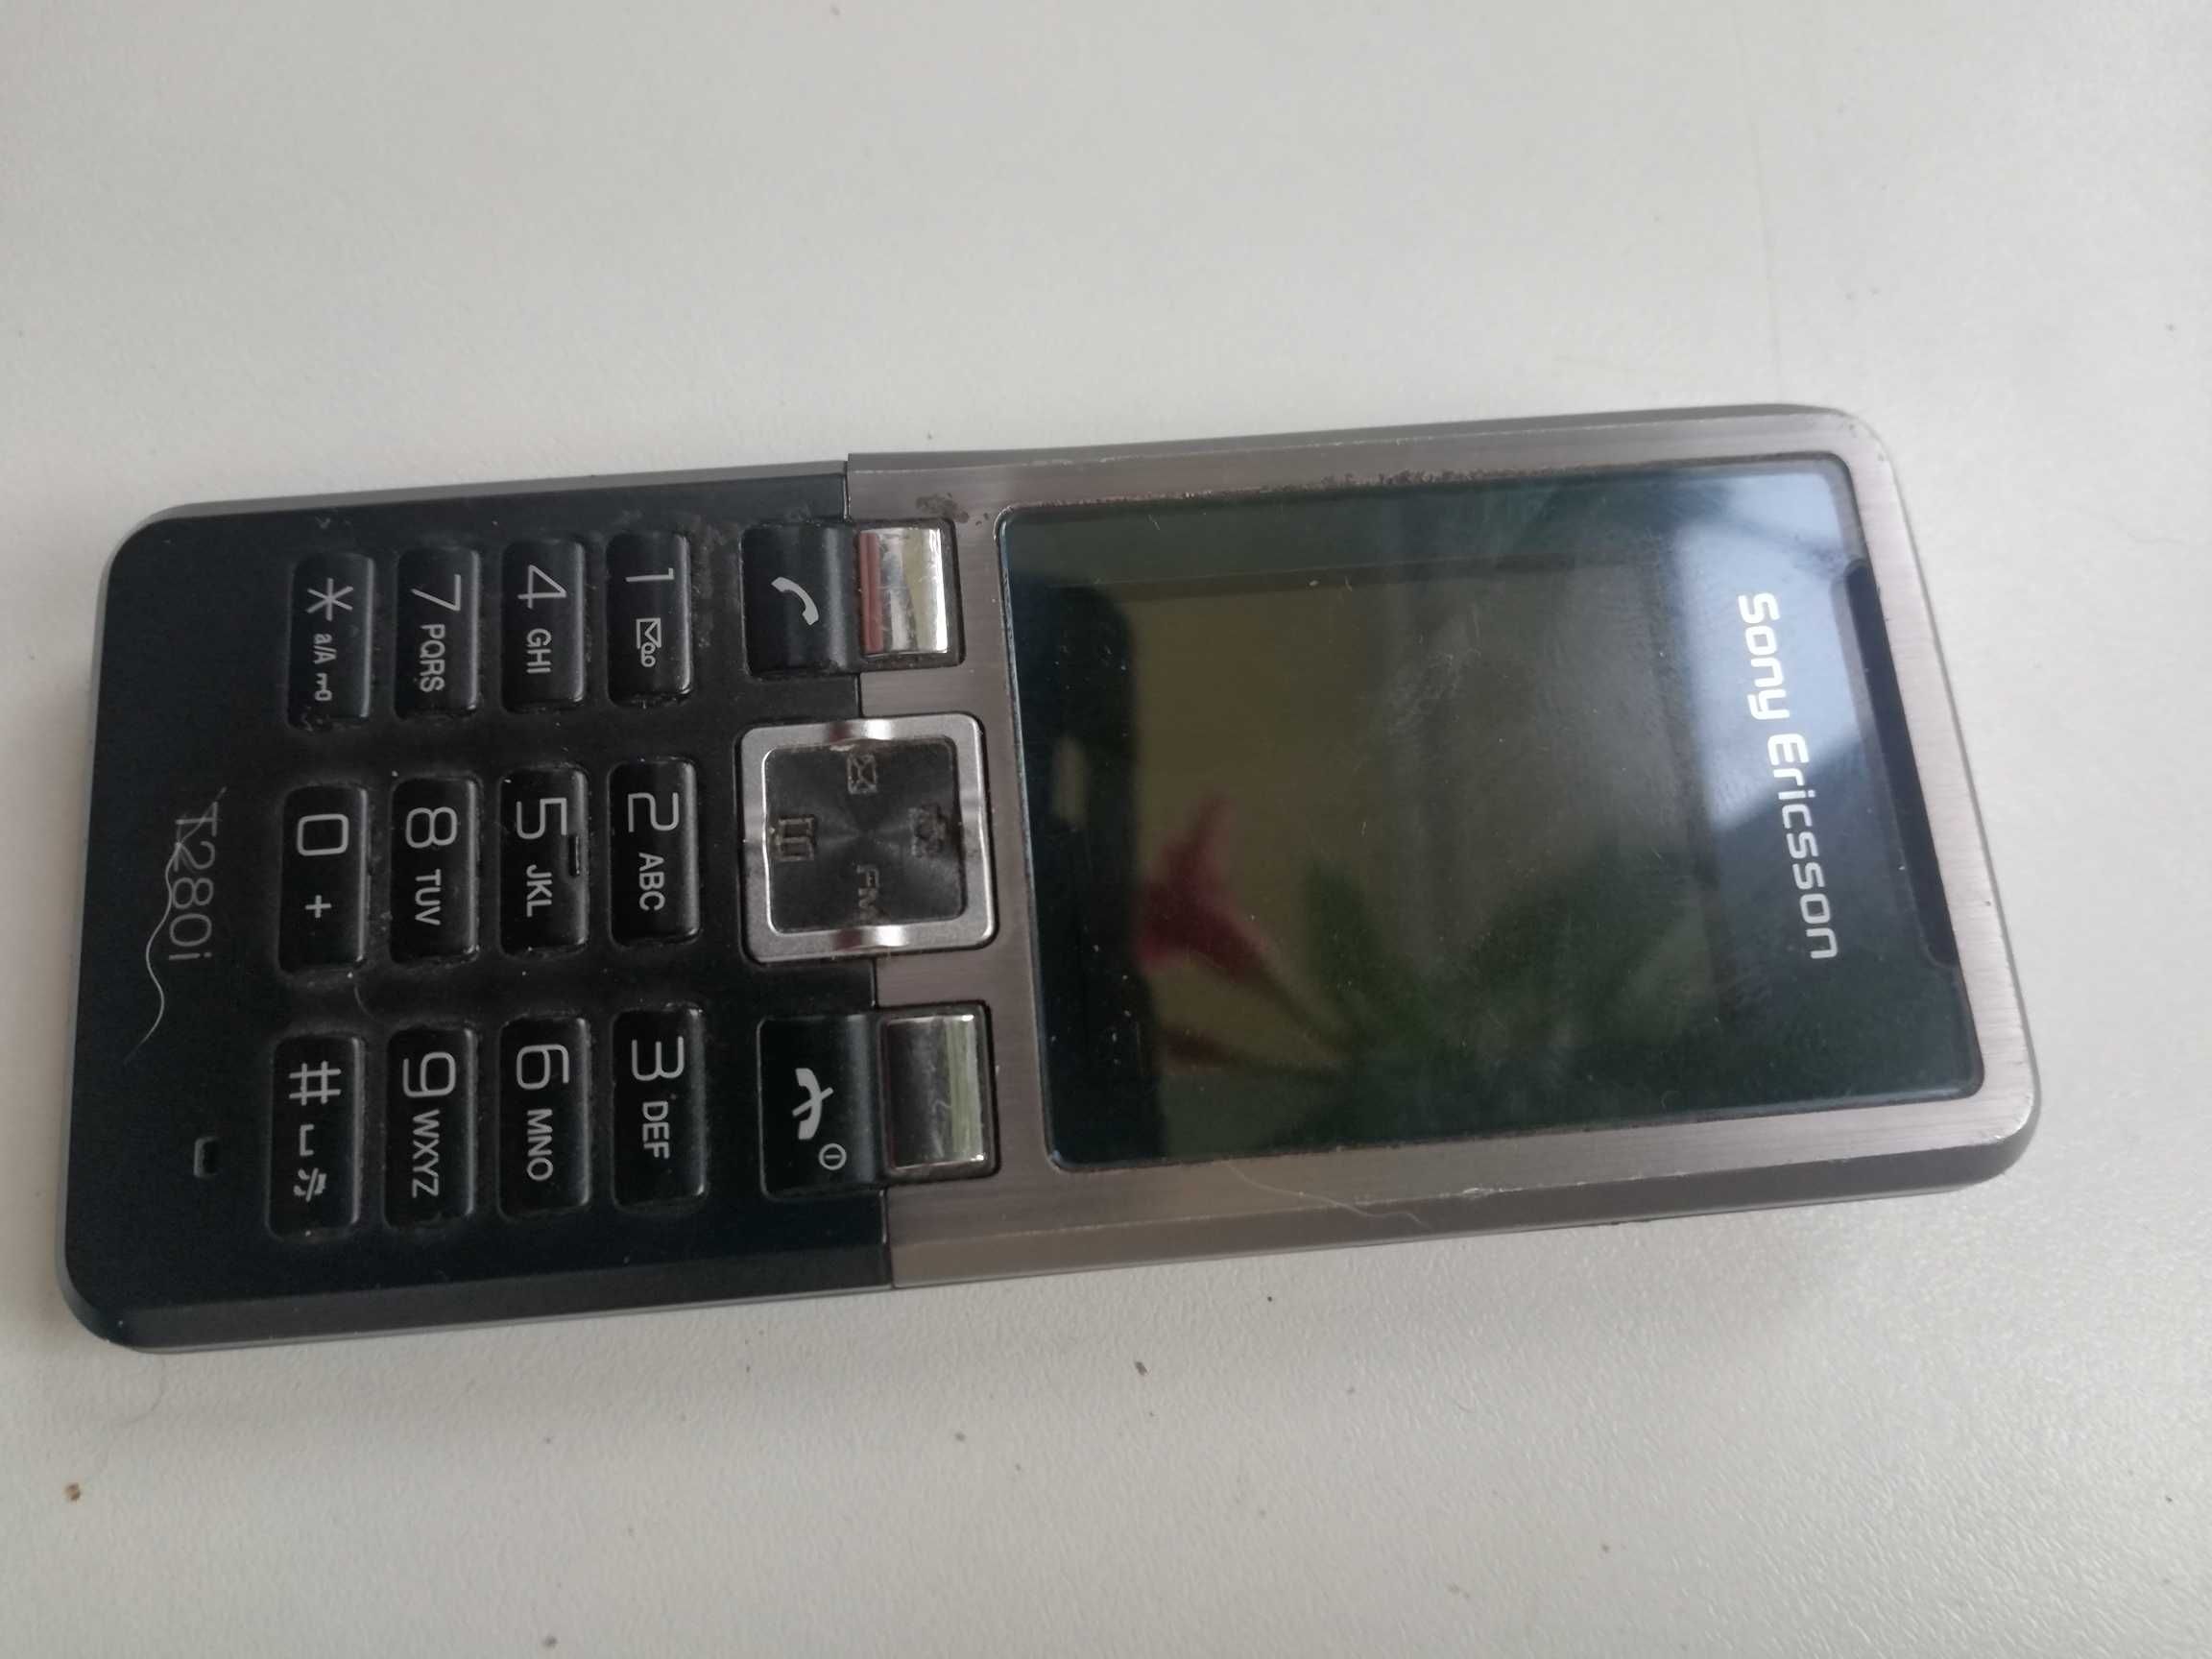 Sprzedam telefon komórkowy Sony Ericsson T-280 i ,retro